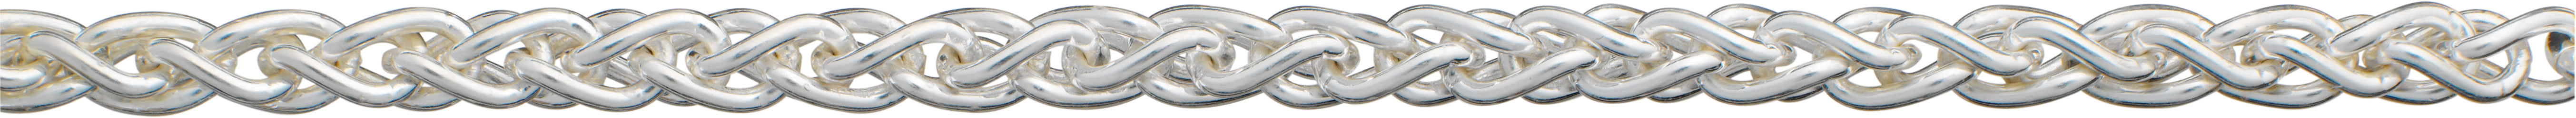 Braid chain silver 925/- Ø 4,20mm